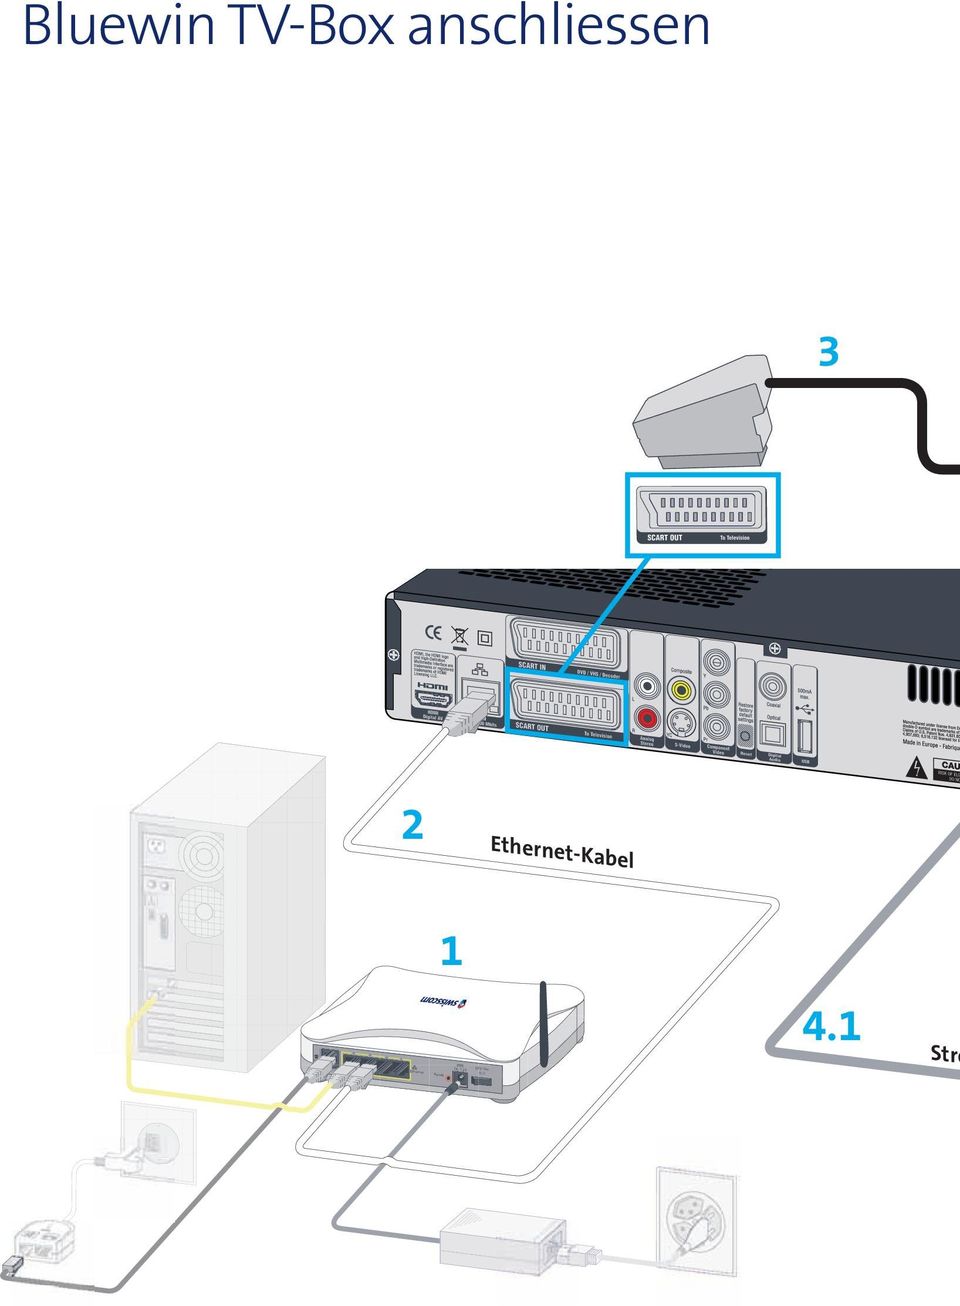 Ethernet-Kabel 1 4 3 2 1